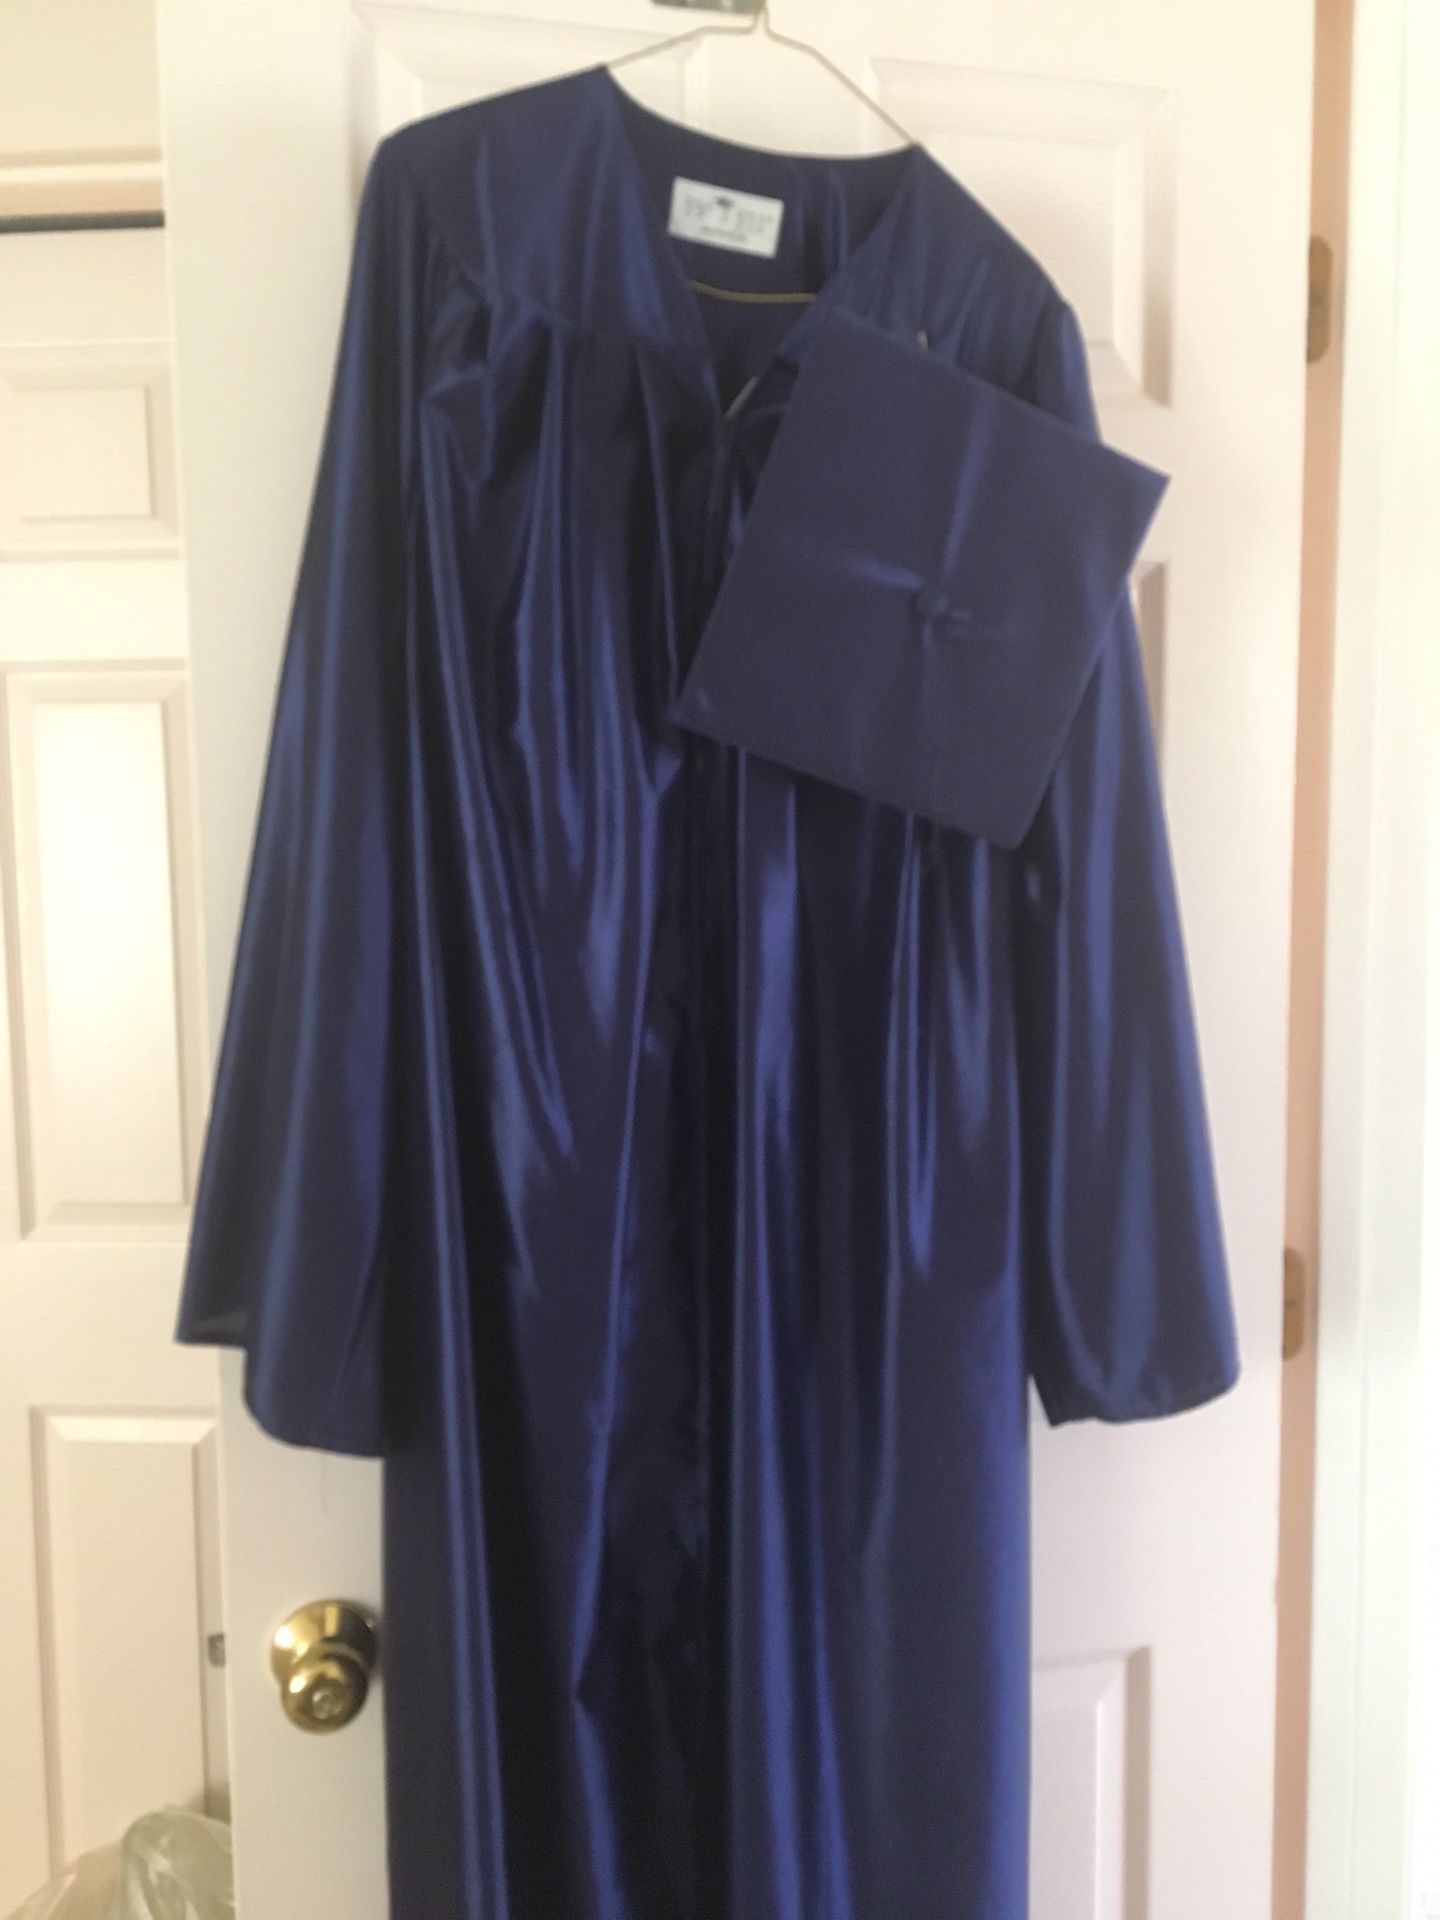 Blue graduation gown & cap